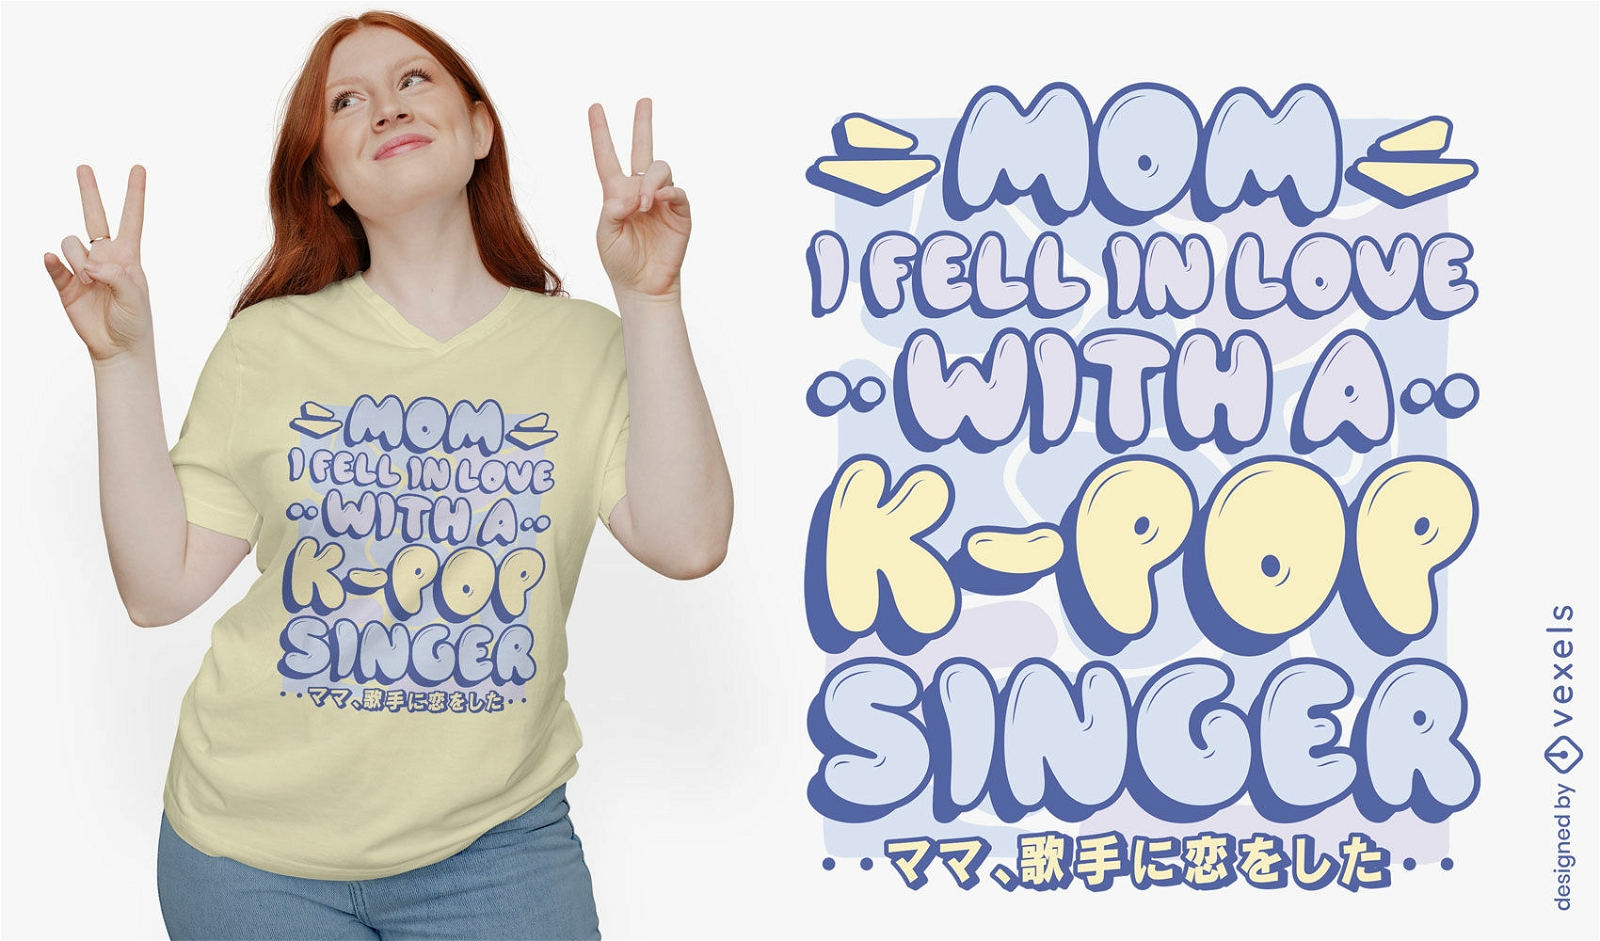 Apaixonei-me pelo design de t-shirt k-pop